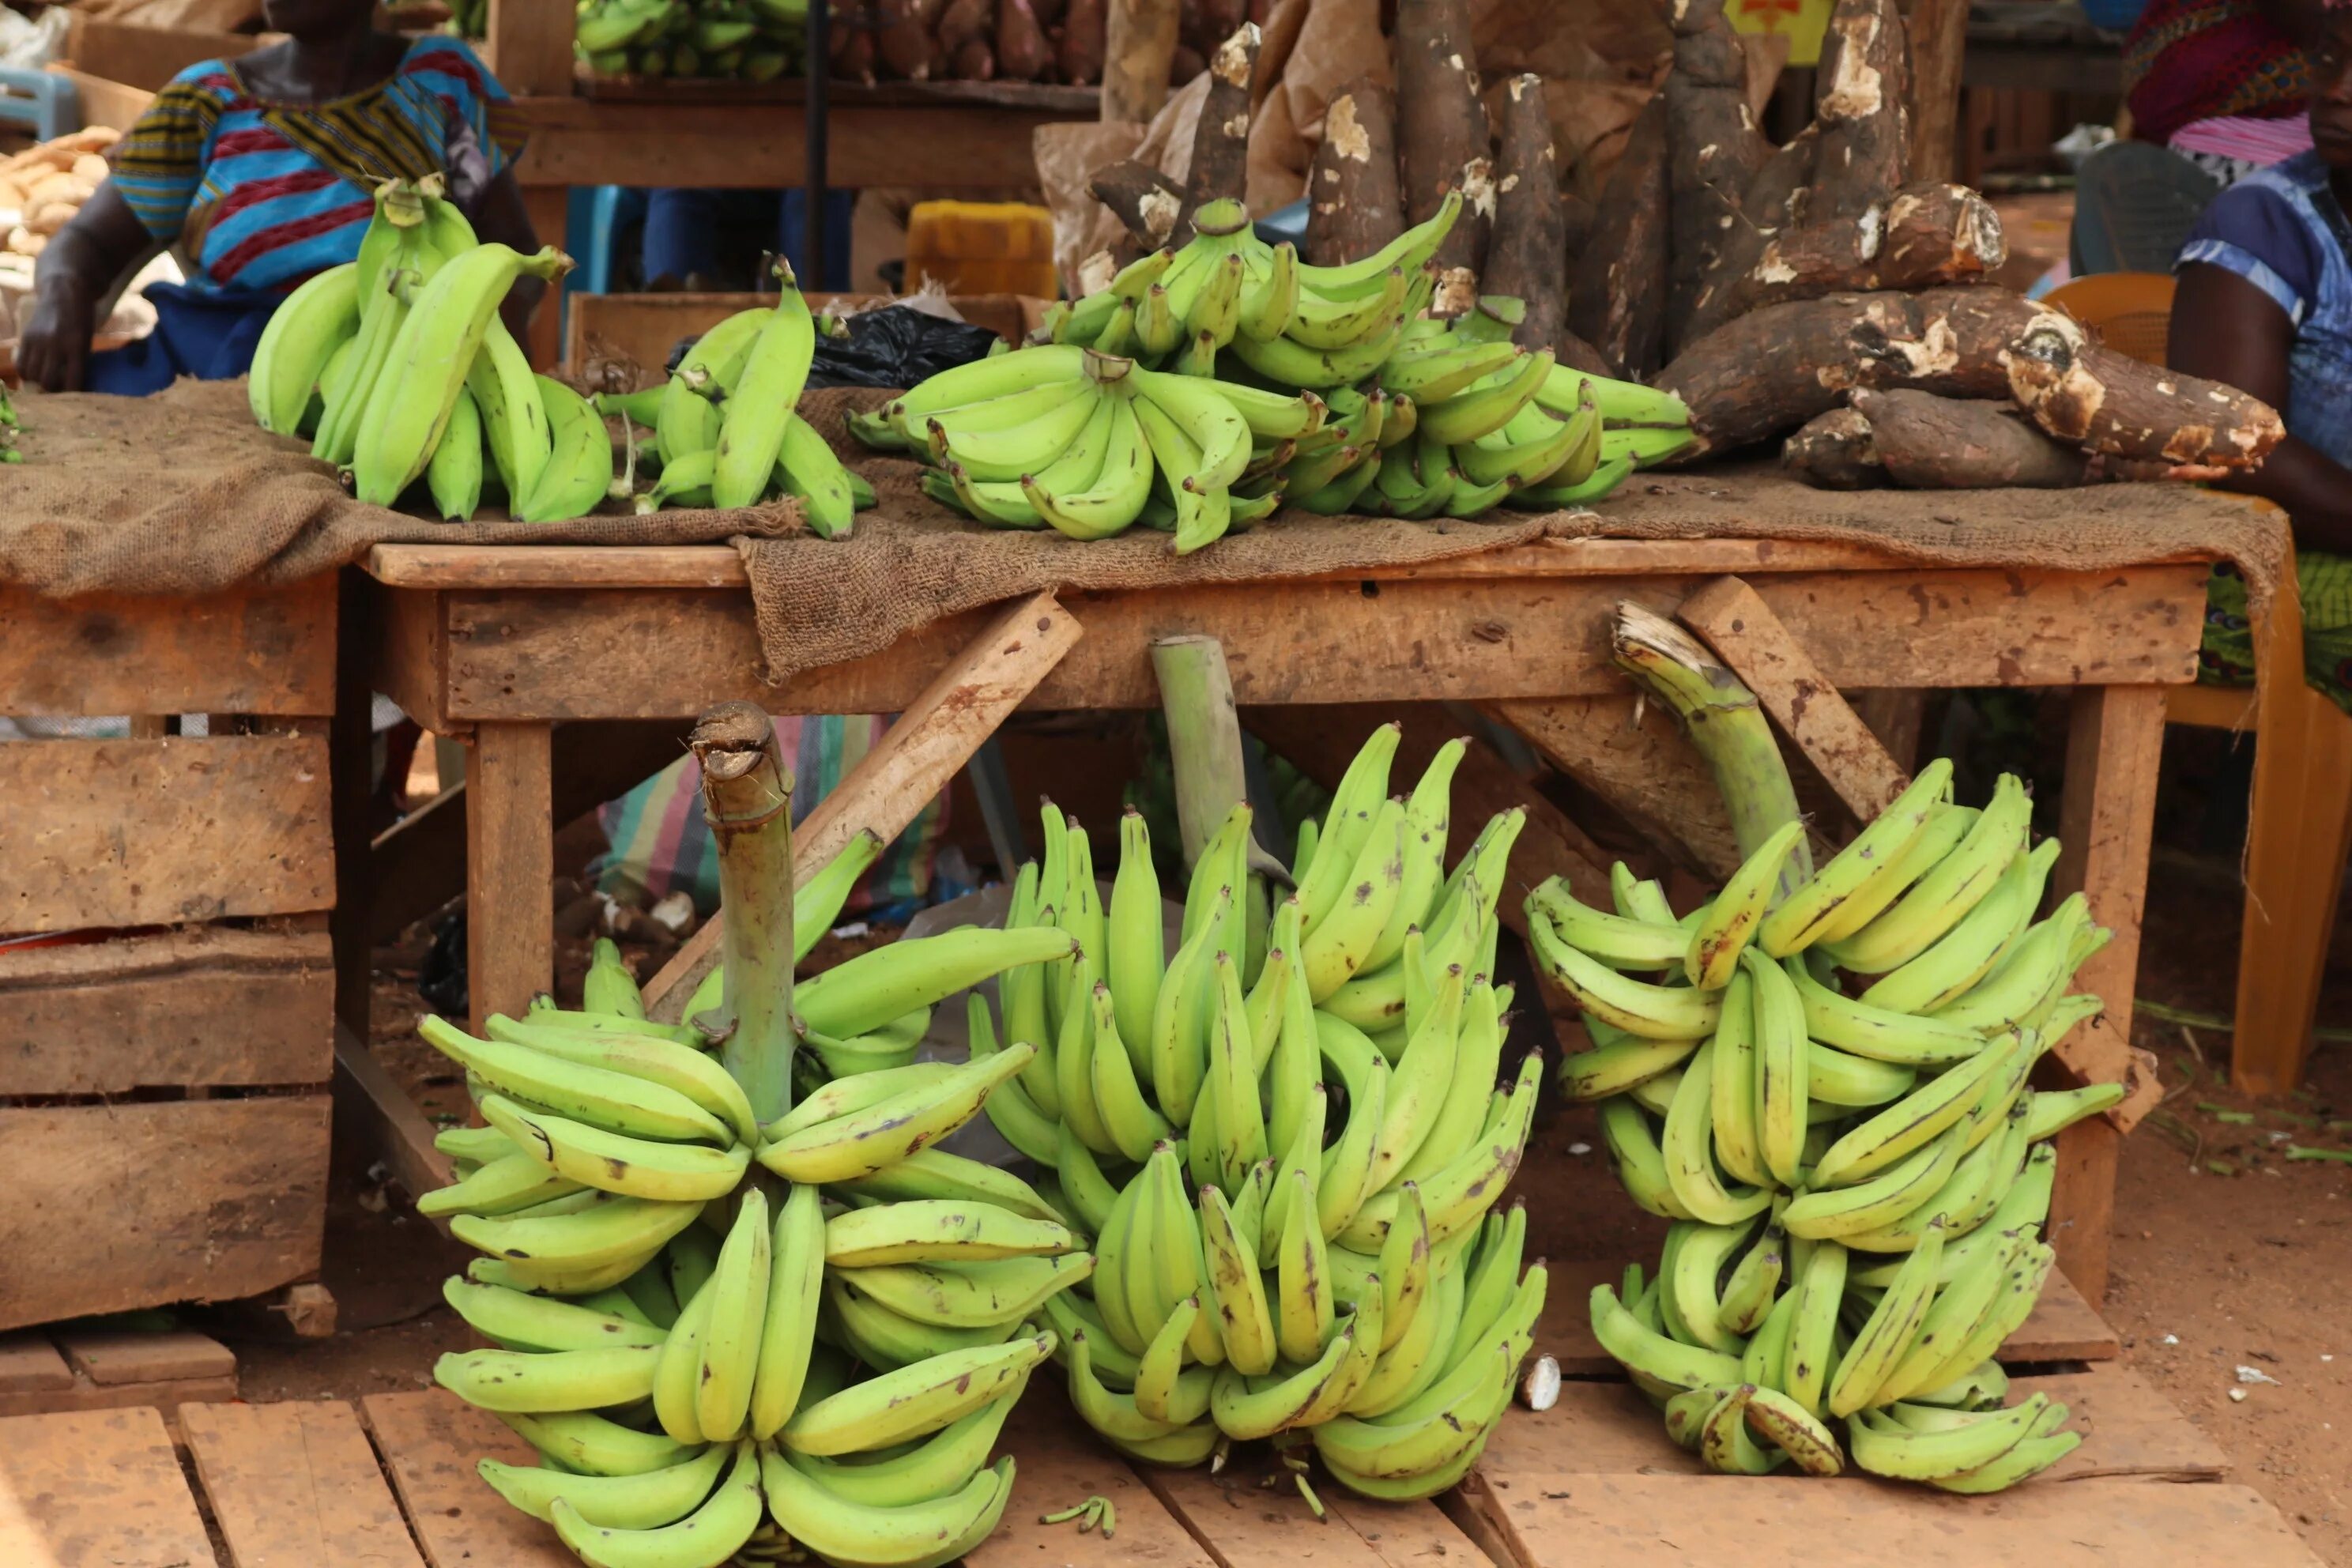 Plantains бананы. Бананы плантайн зеленые. Сорт Хорн банан. Плантации бананов.